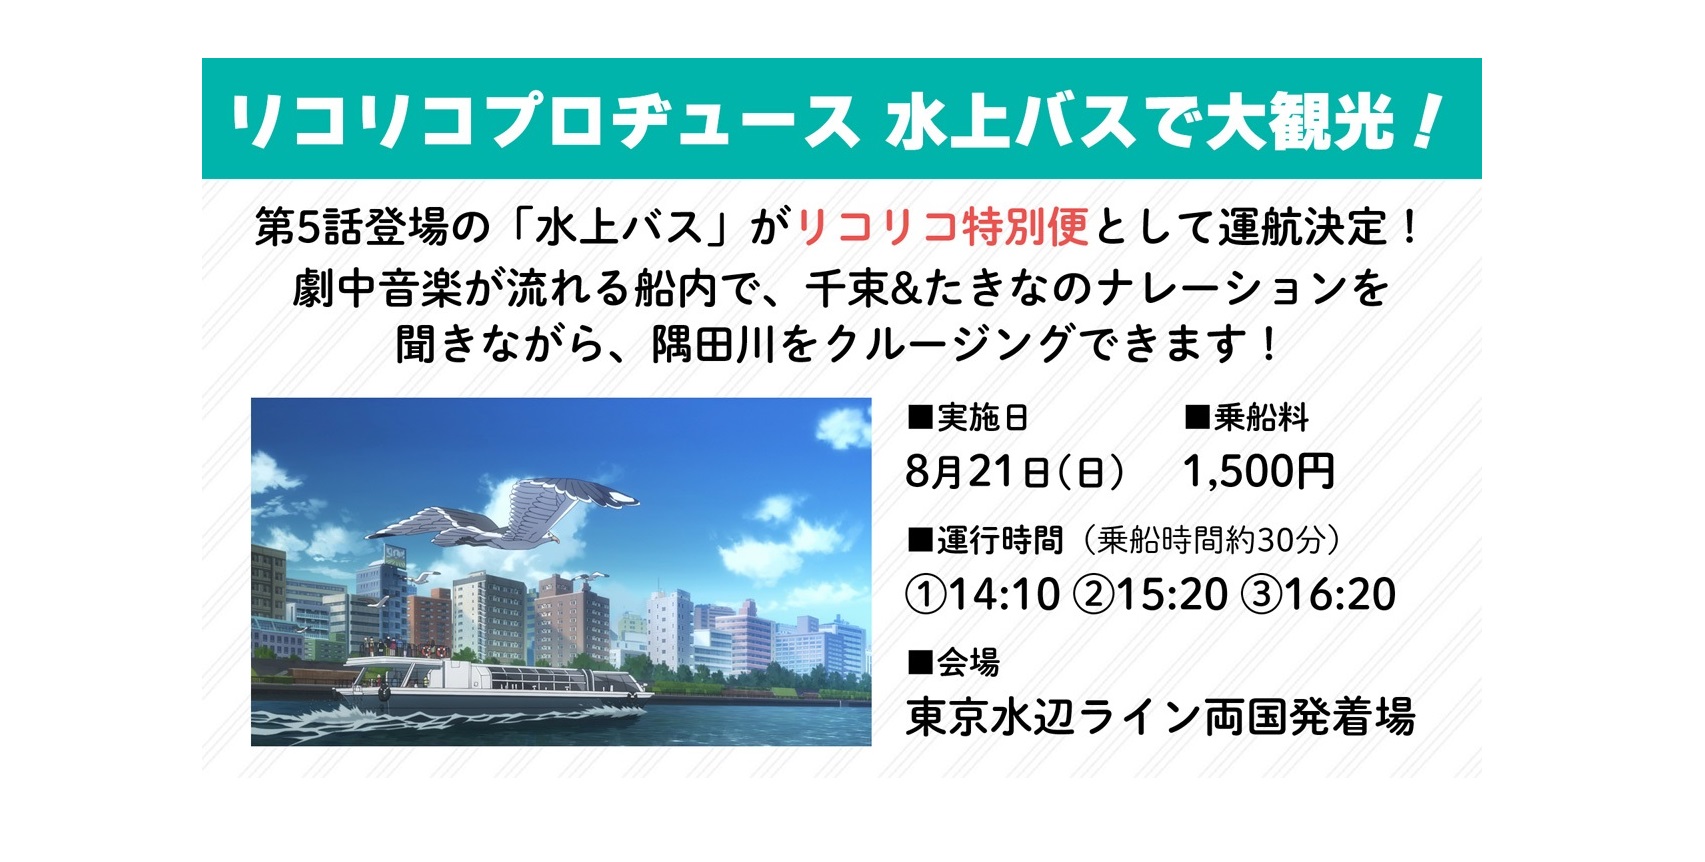 TVアニメ『リコリス・リコイル』特別便 「リコリコプロヂュース 水上バスで大観光！」